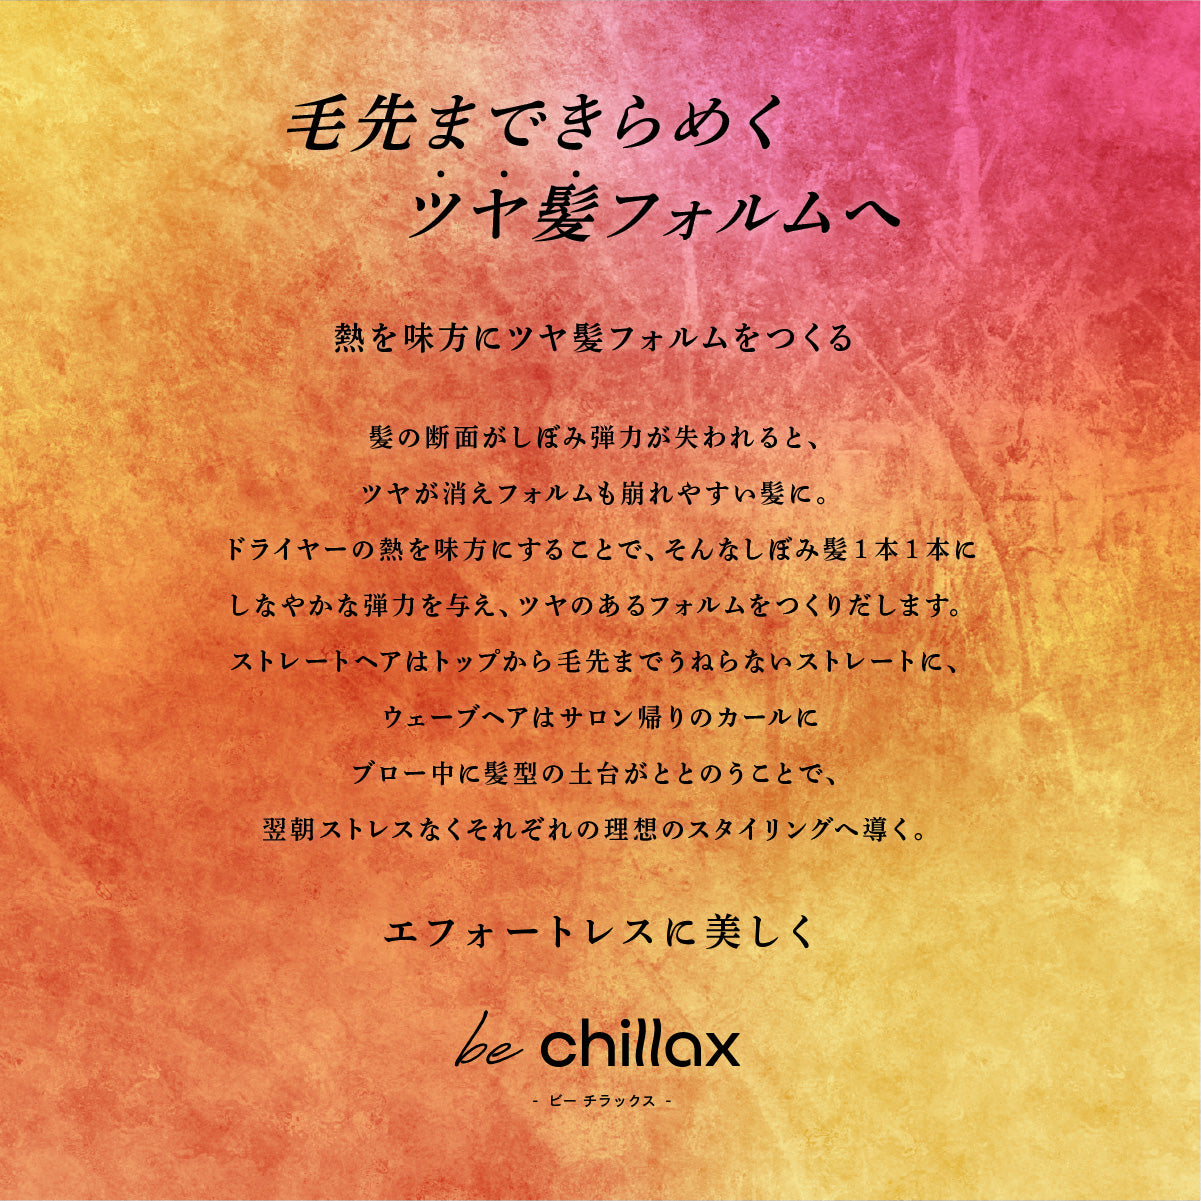 【be chillax】ブローリペアシャンプー/トリートメント 詰め替え【単品】